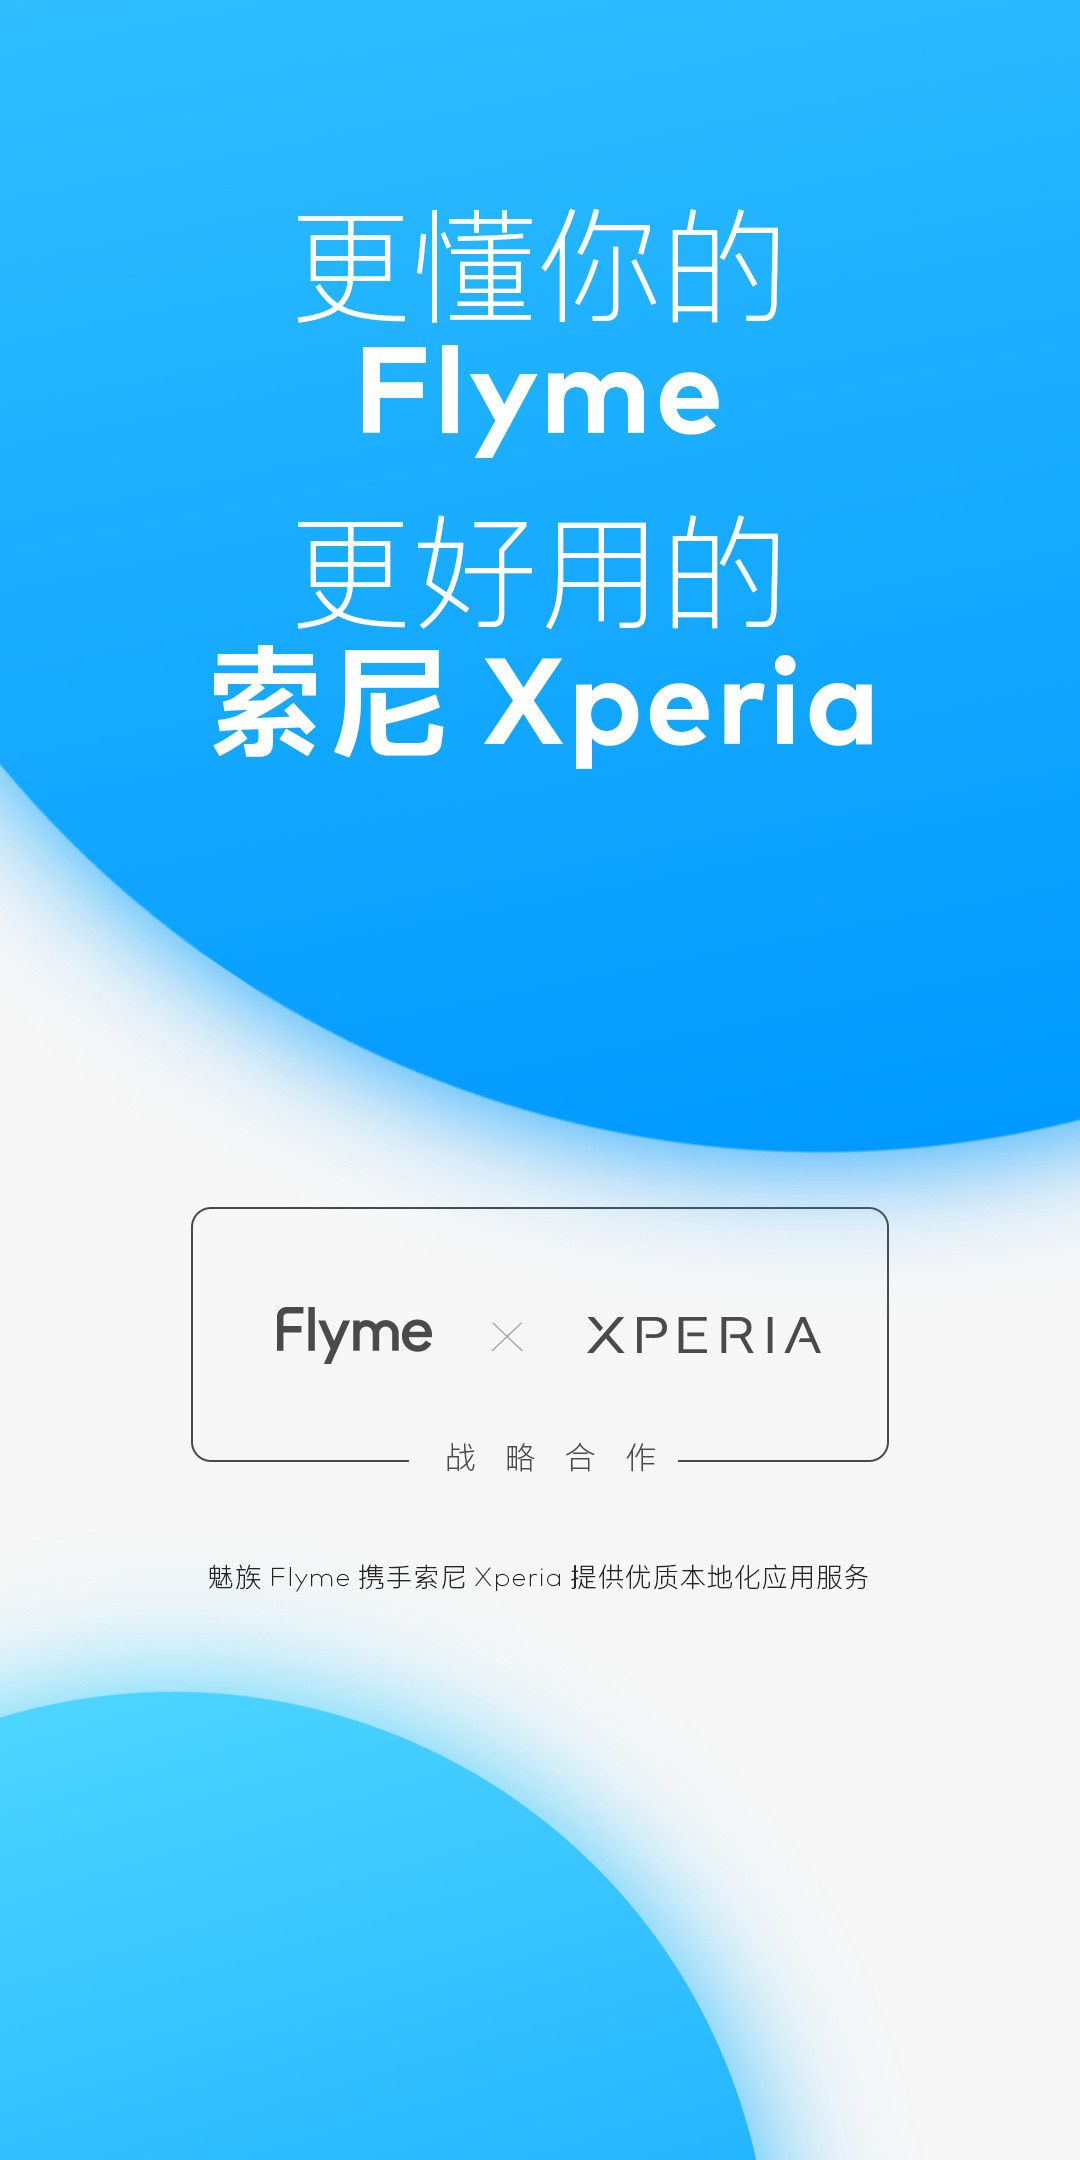 魅族 Flyme 与索尼 Xperia 达成战略合作，提供优质本地化应用服务